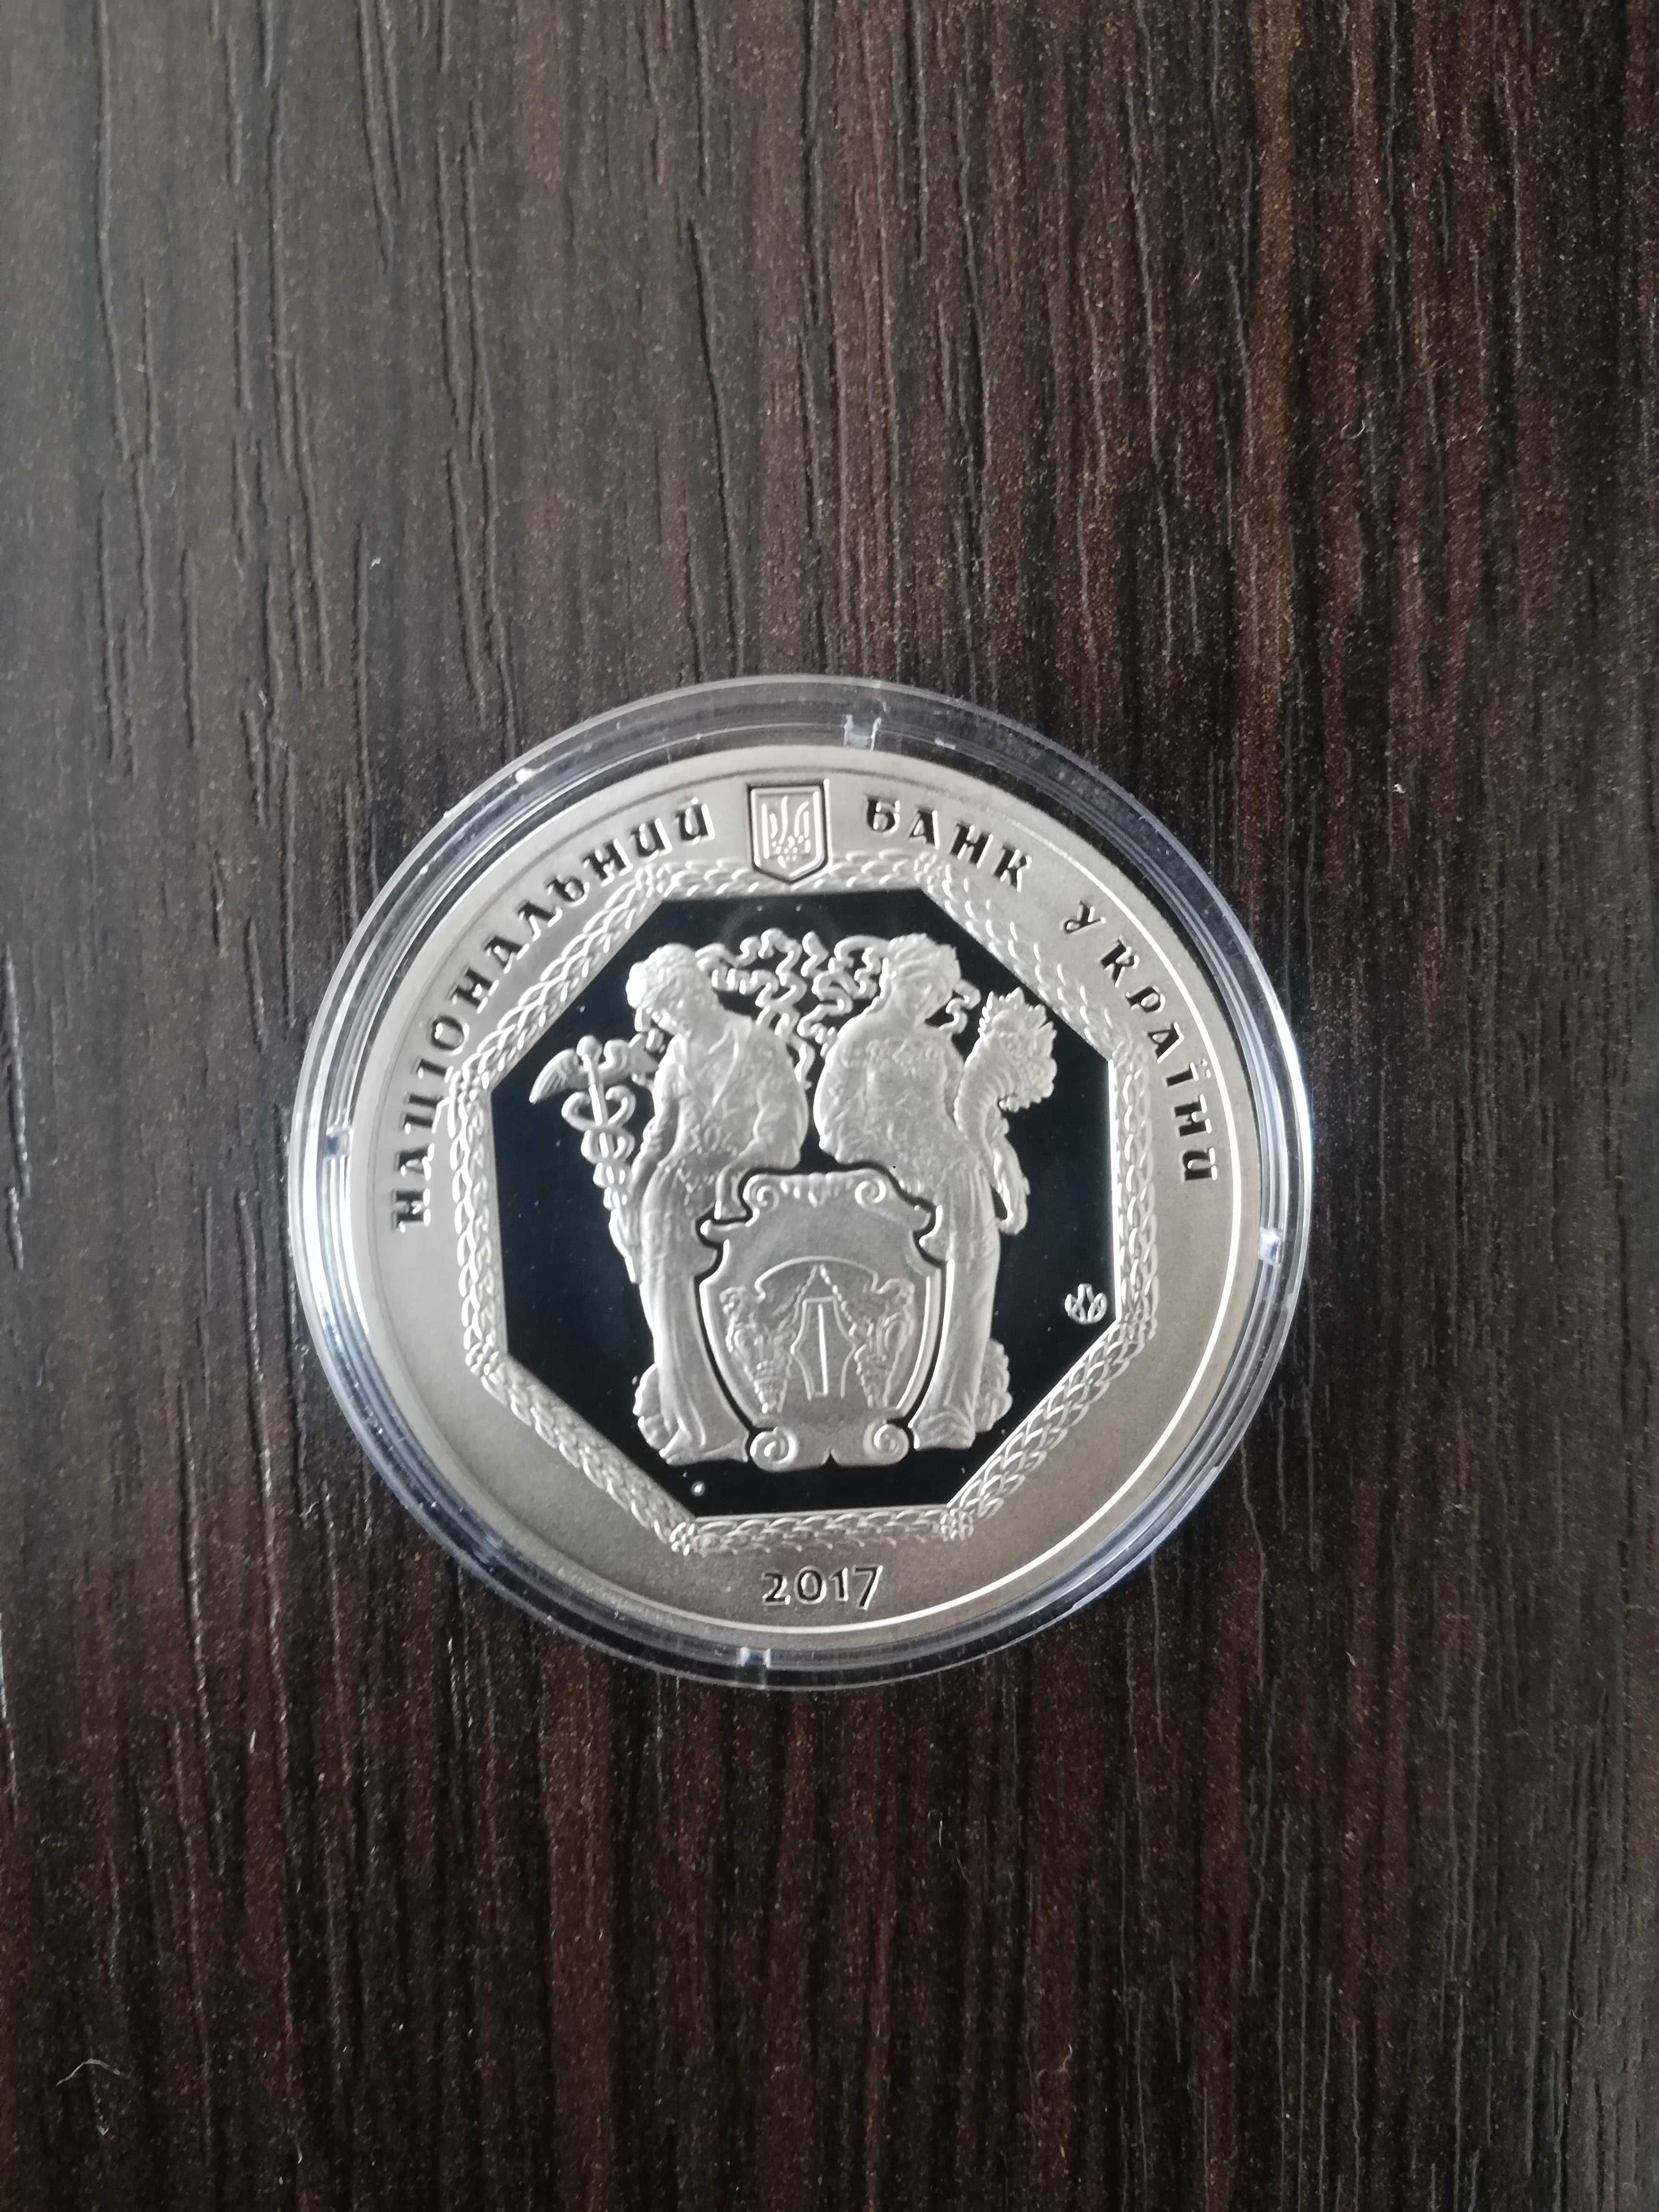 Пам'ятна медаль 100 років заснування Української державного банку 2017